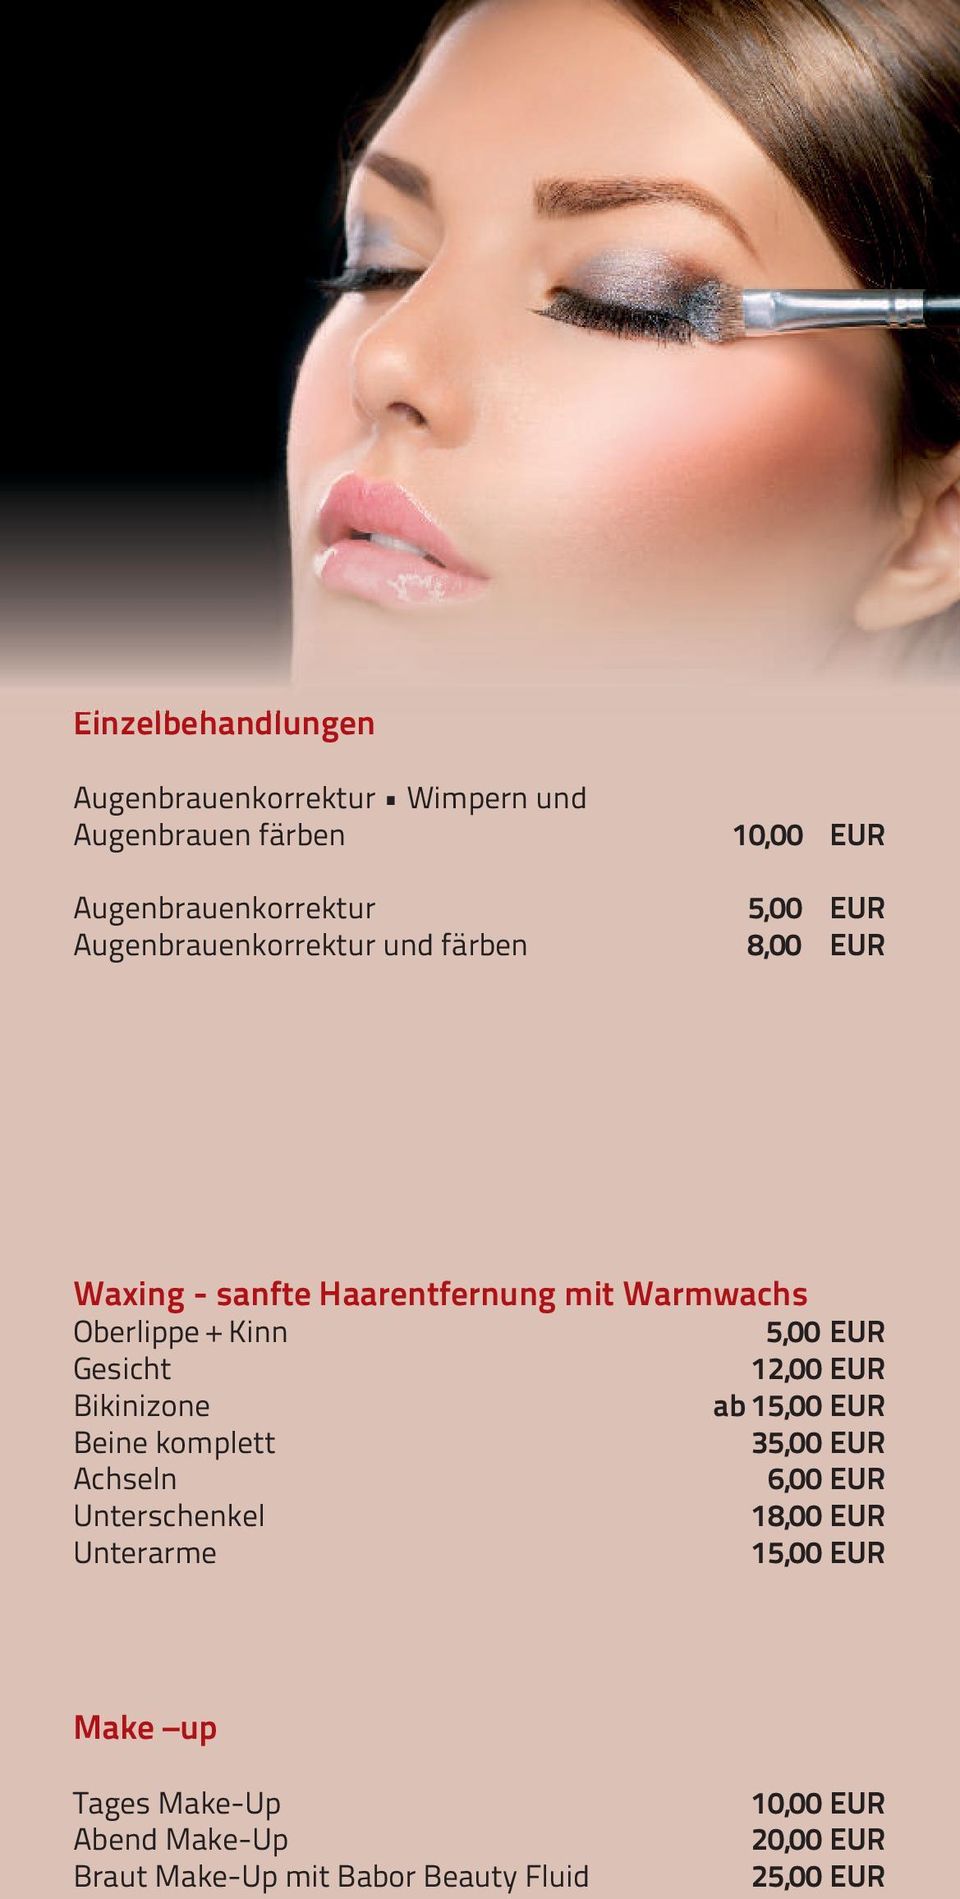 Gesicht 12,00 EUR Bikinizone ab 15,00 EUR Beine komplett 35,00 EUR Achseln 6,00 EUR Unterschenkel 18,00 EUR